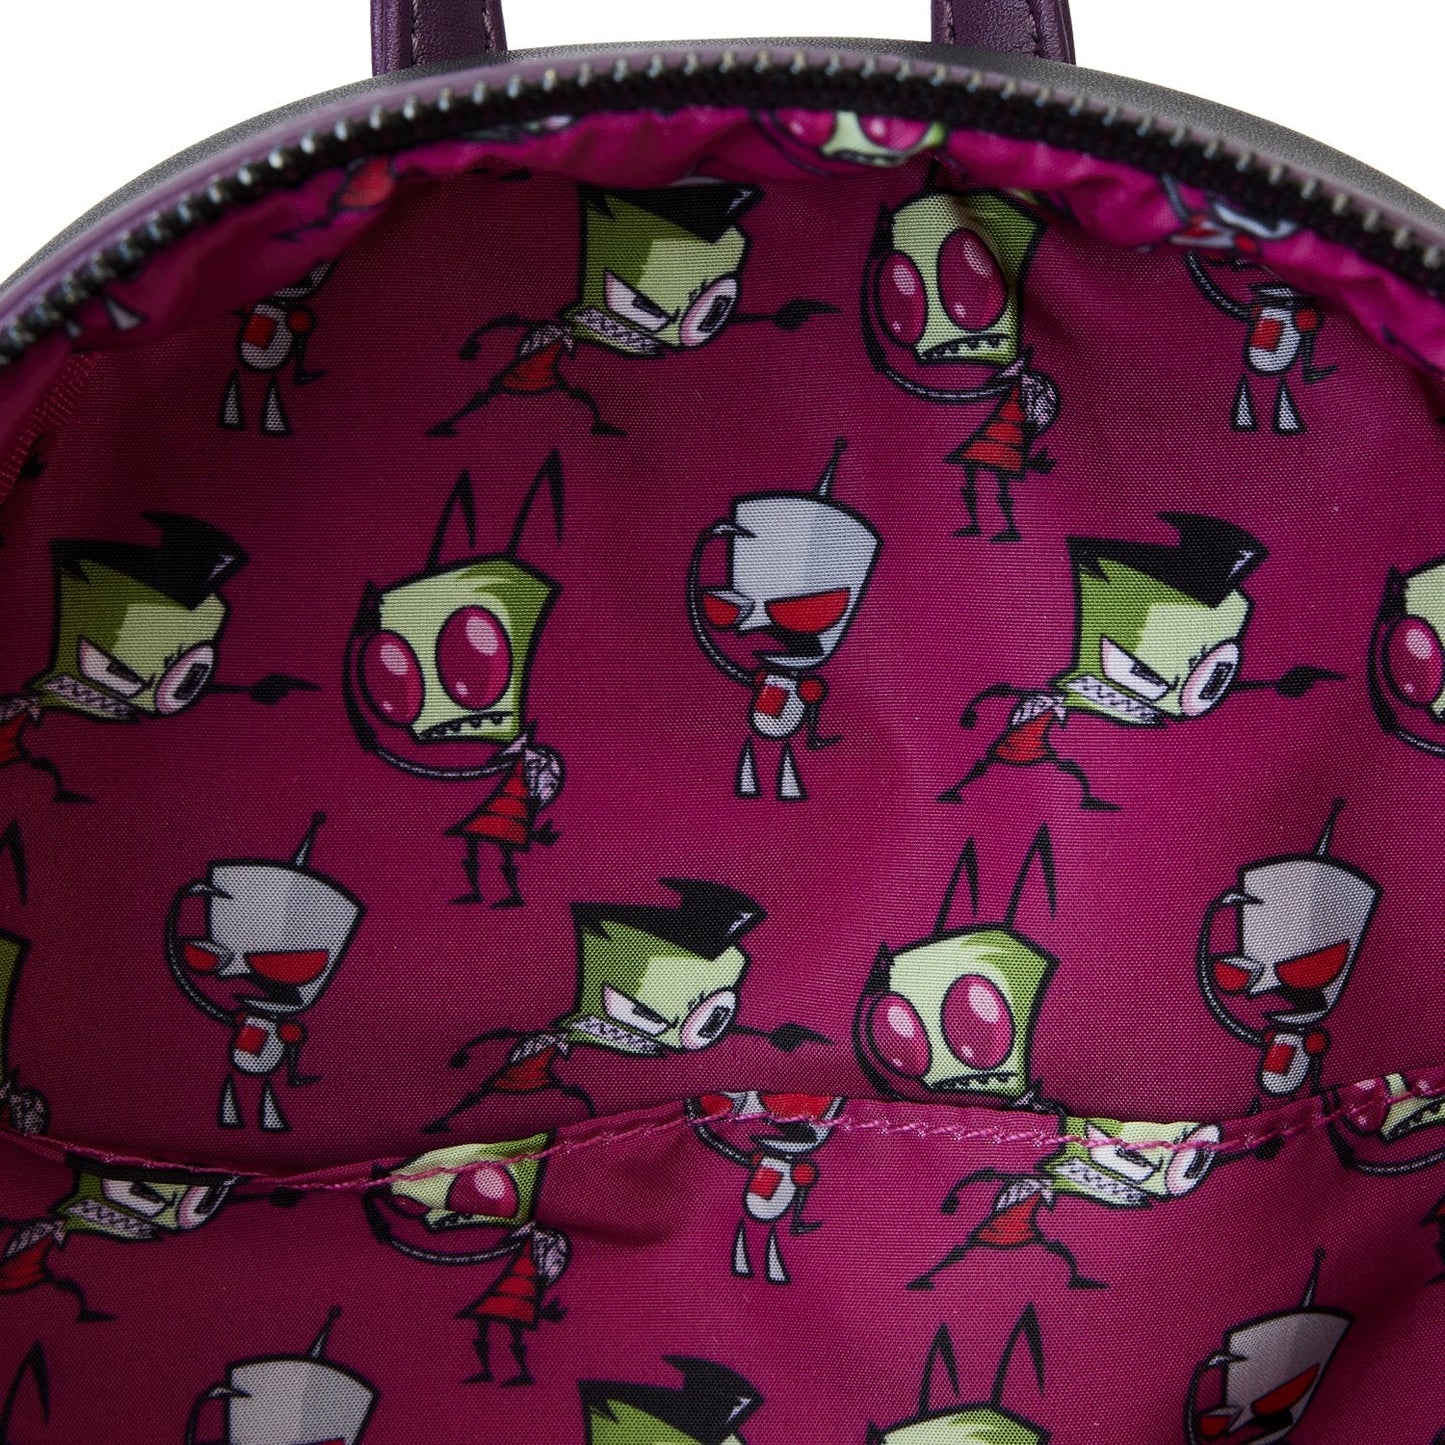 Invader Zim Secret Lair mini backpack